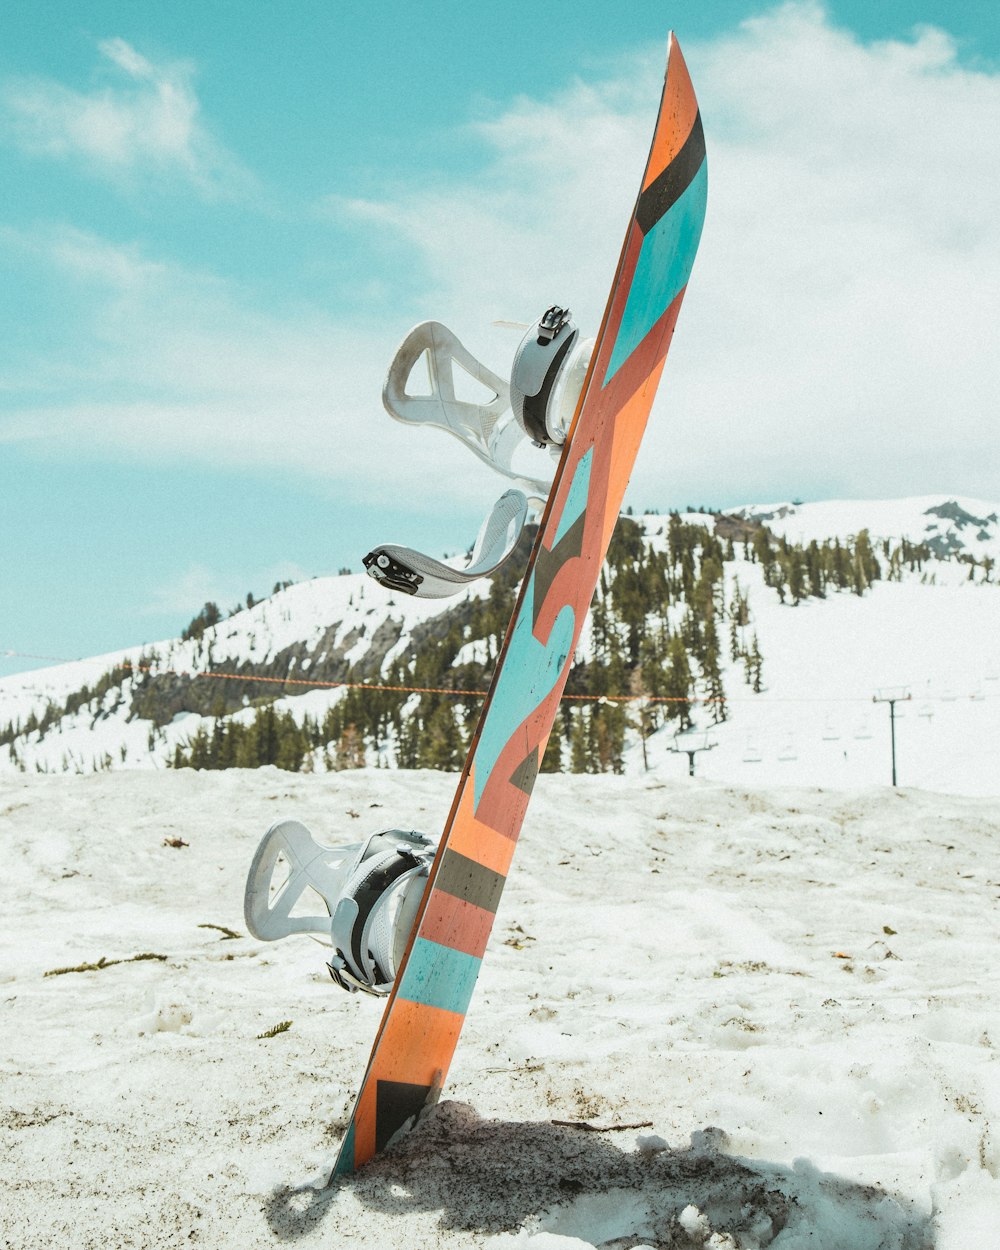 Fotografía de enfoque superficial de snowboard multicolor